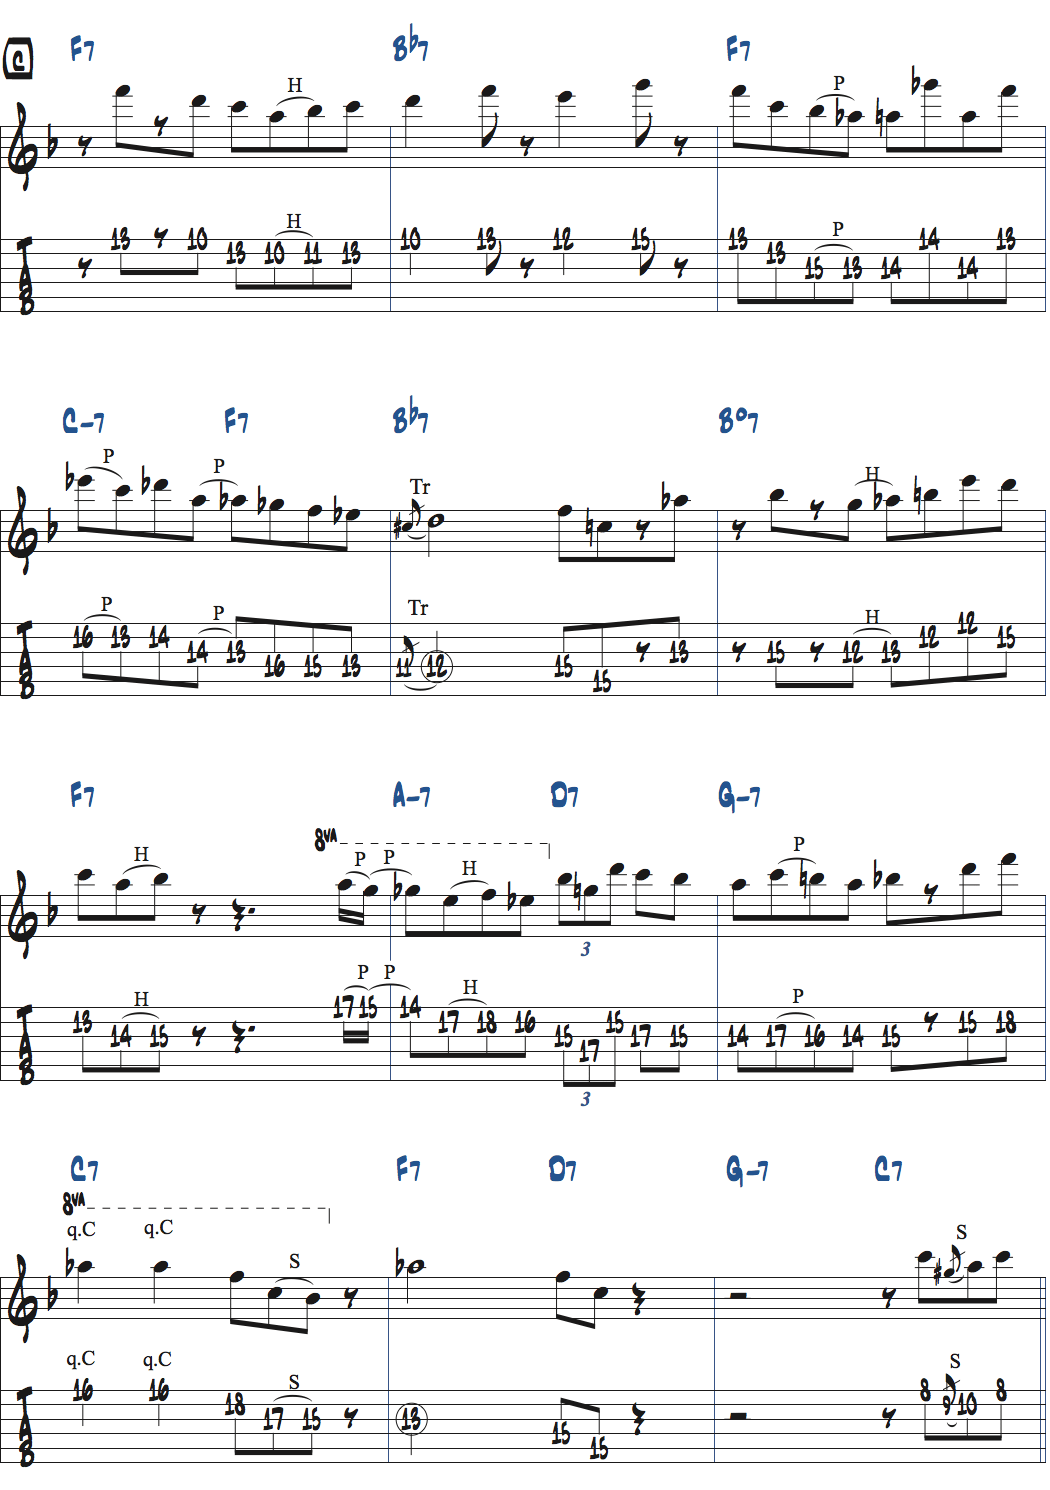 キーFのジャズブルースでのアドリブ楽譜ページ3